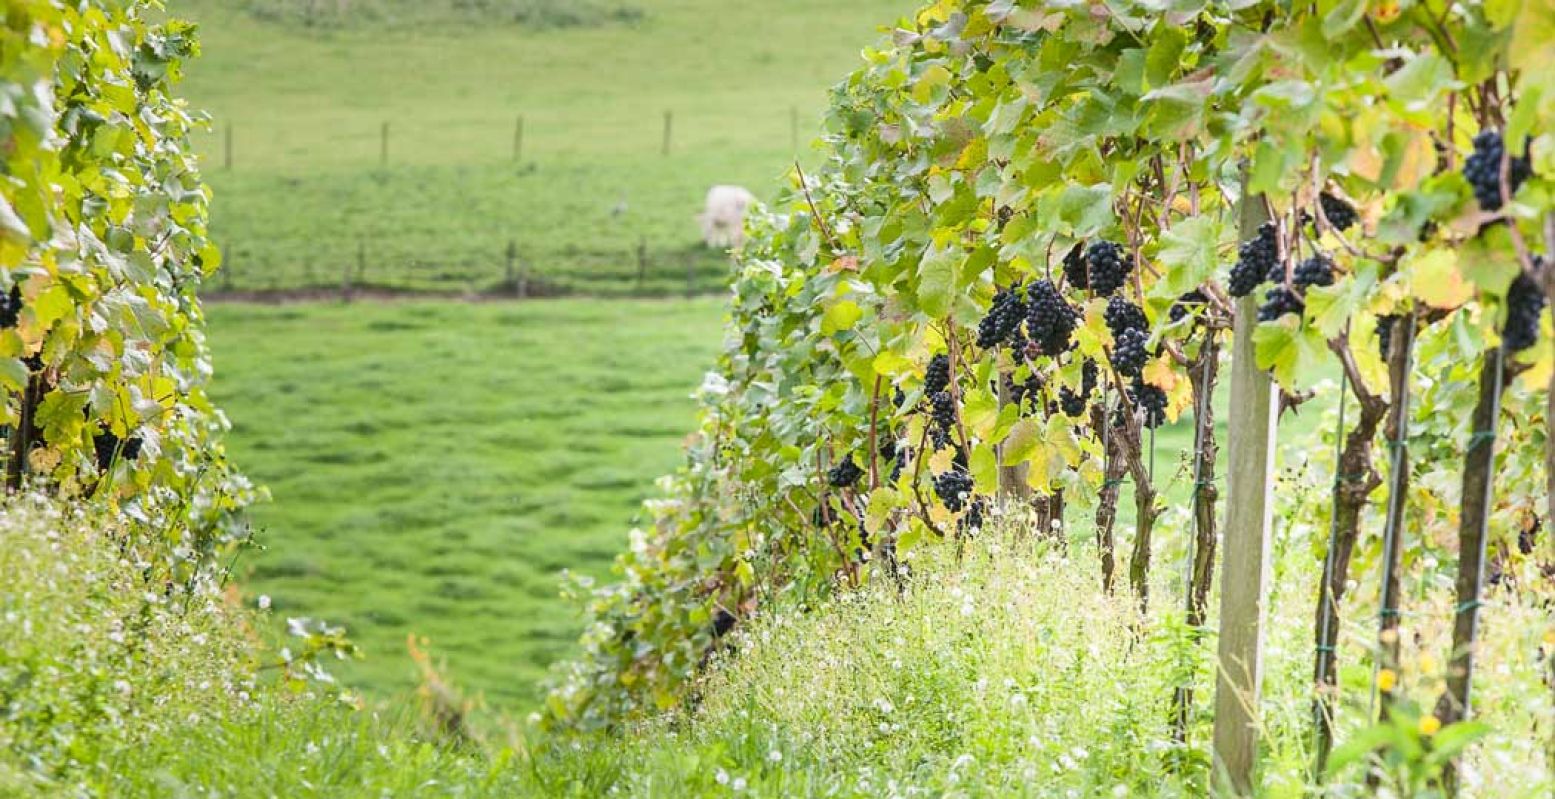 Struin rond tussen de wijnstokken, gewoon bij Wijngaard Stokhemer Wingert in Zuid-Limburg. Foto: © Visit Zuid-Limburg